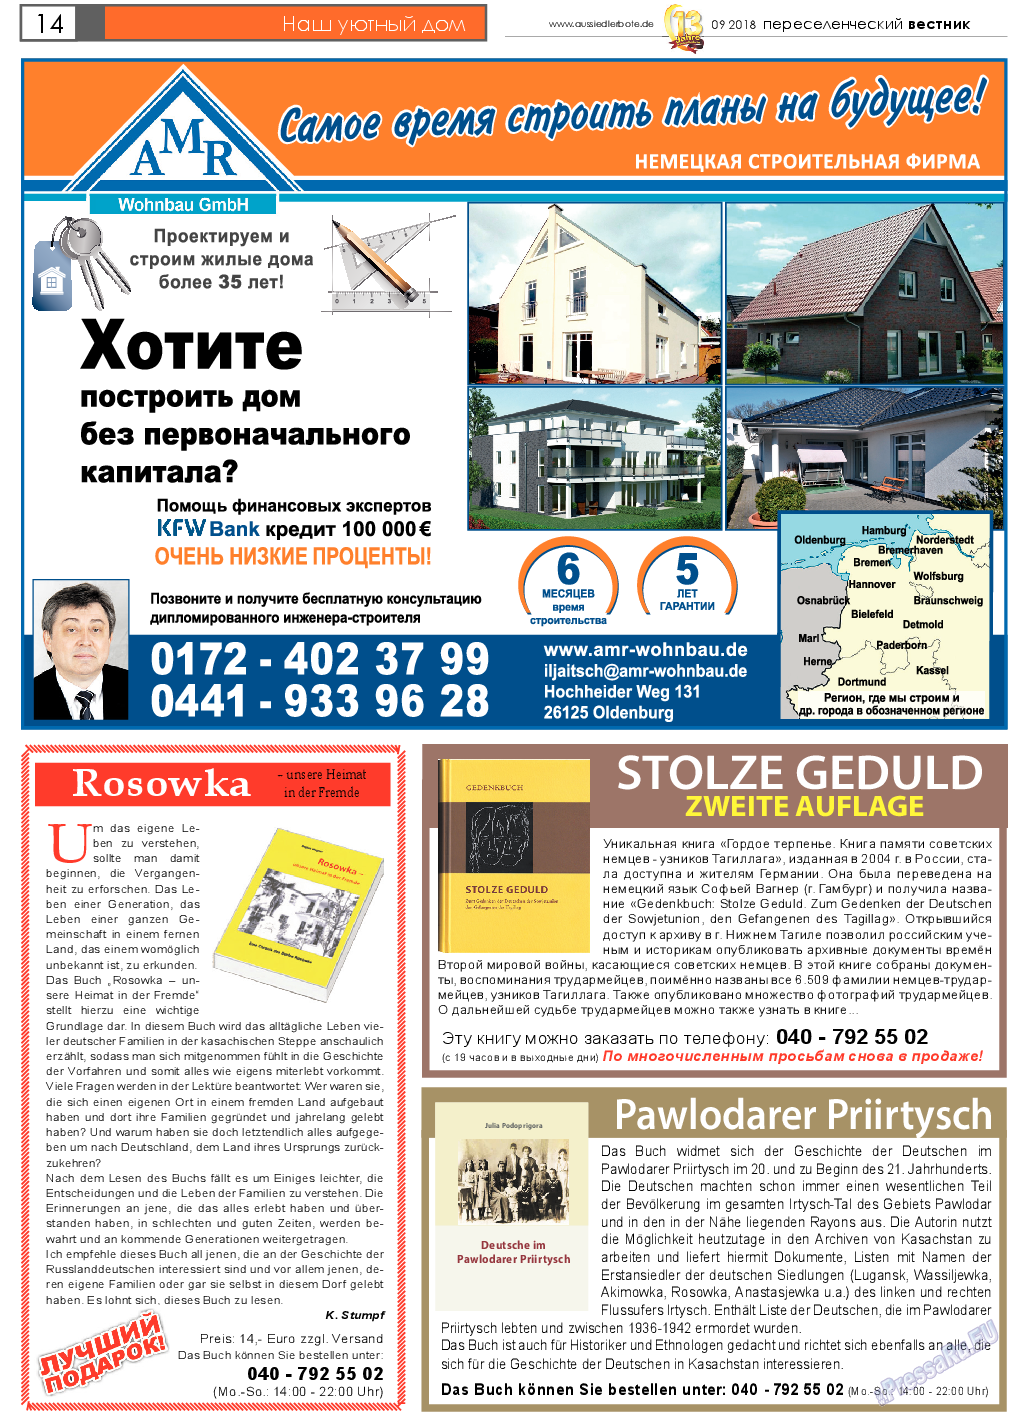 Переселенческий вестник (газета). 2018 год, номер 9, стр. 14